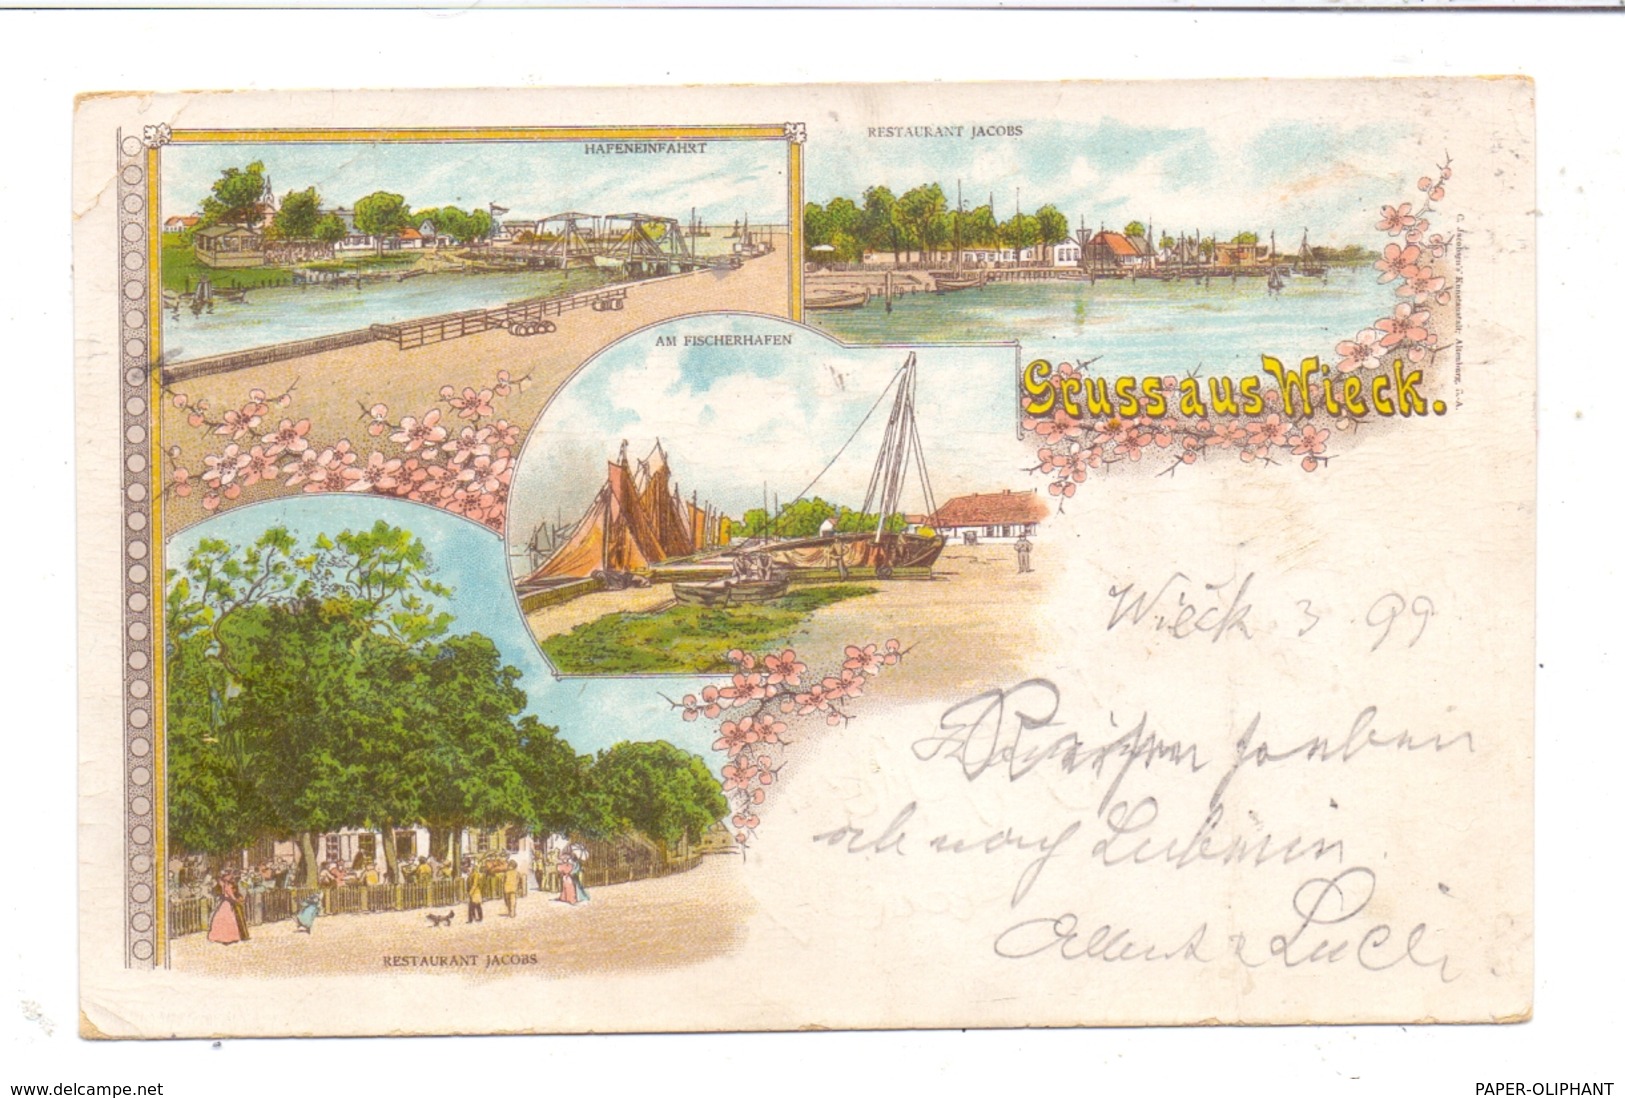 0-2381 WIECK, Lithographie 1899, Restaurant Jacobs, Hafeneinfahrt, Am Fischerhafen, Druckstelle - Fischland/Darss